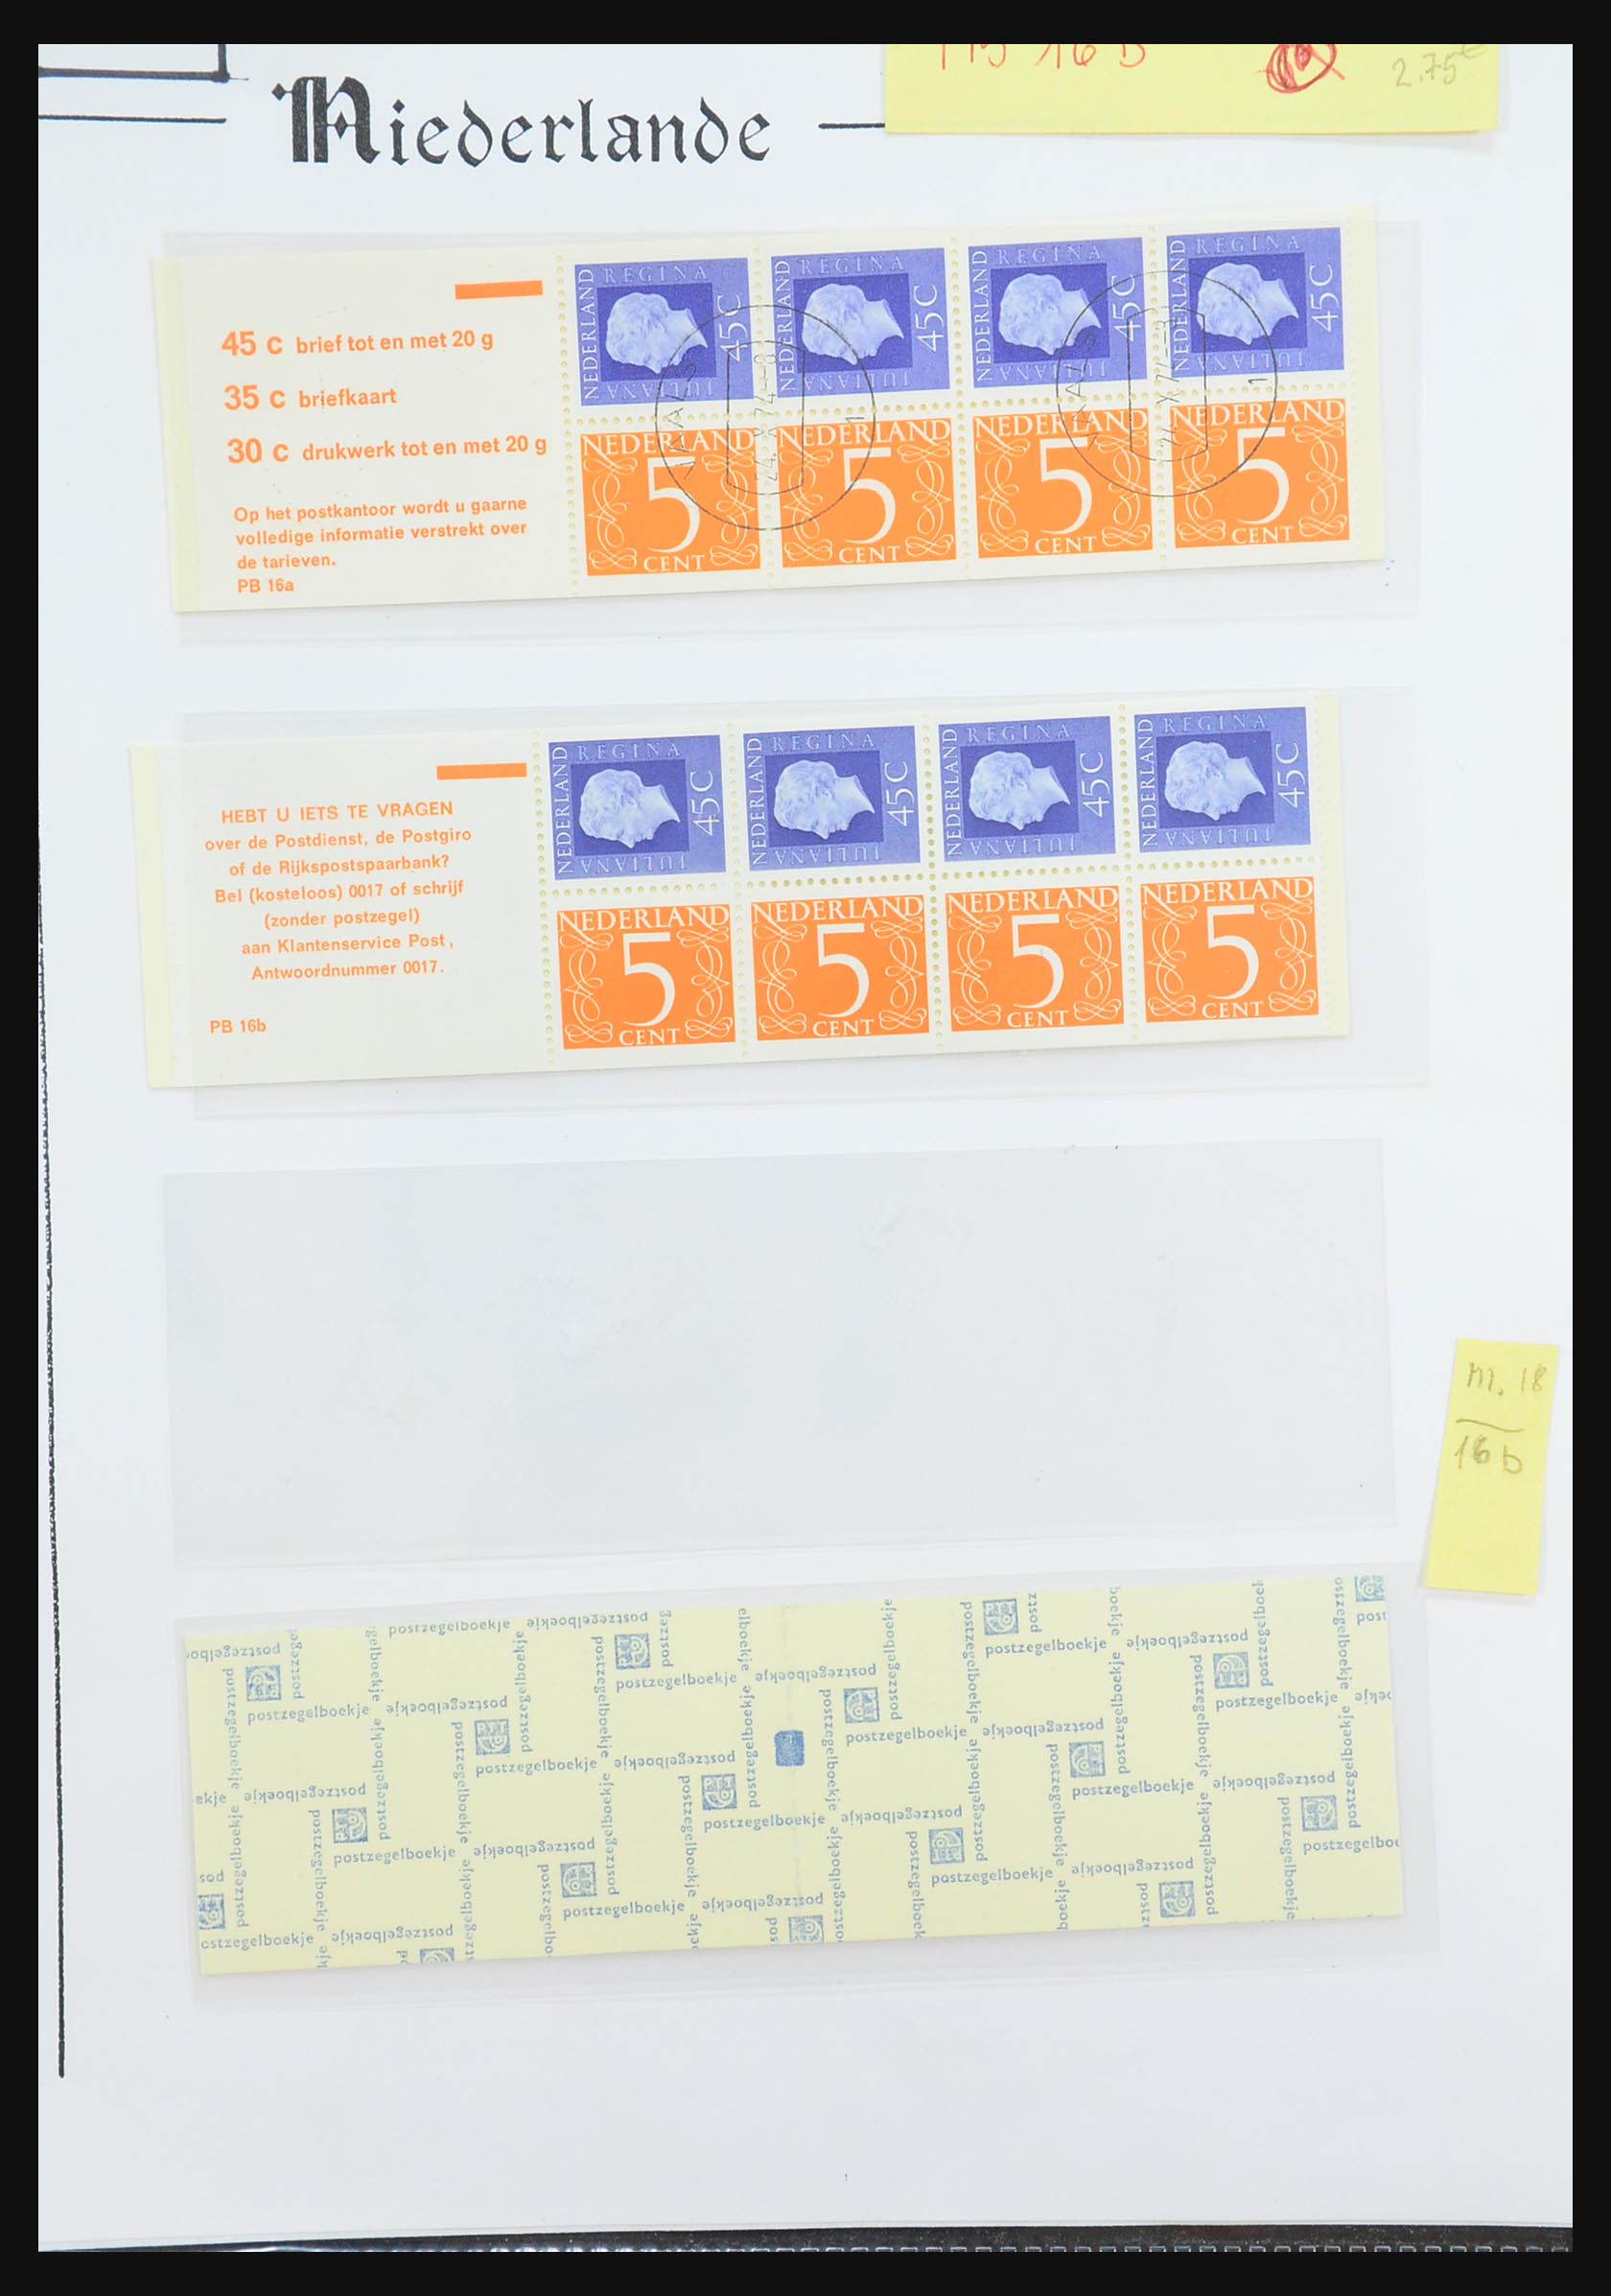 31311 060 - 31311 Netherlands stamp booklets 1964-1994.